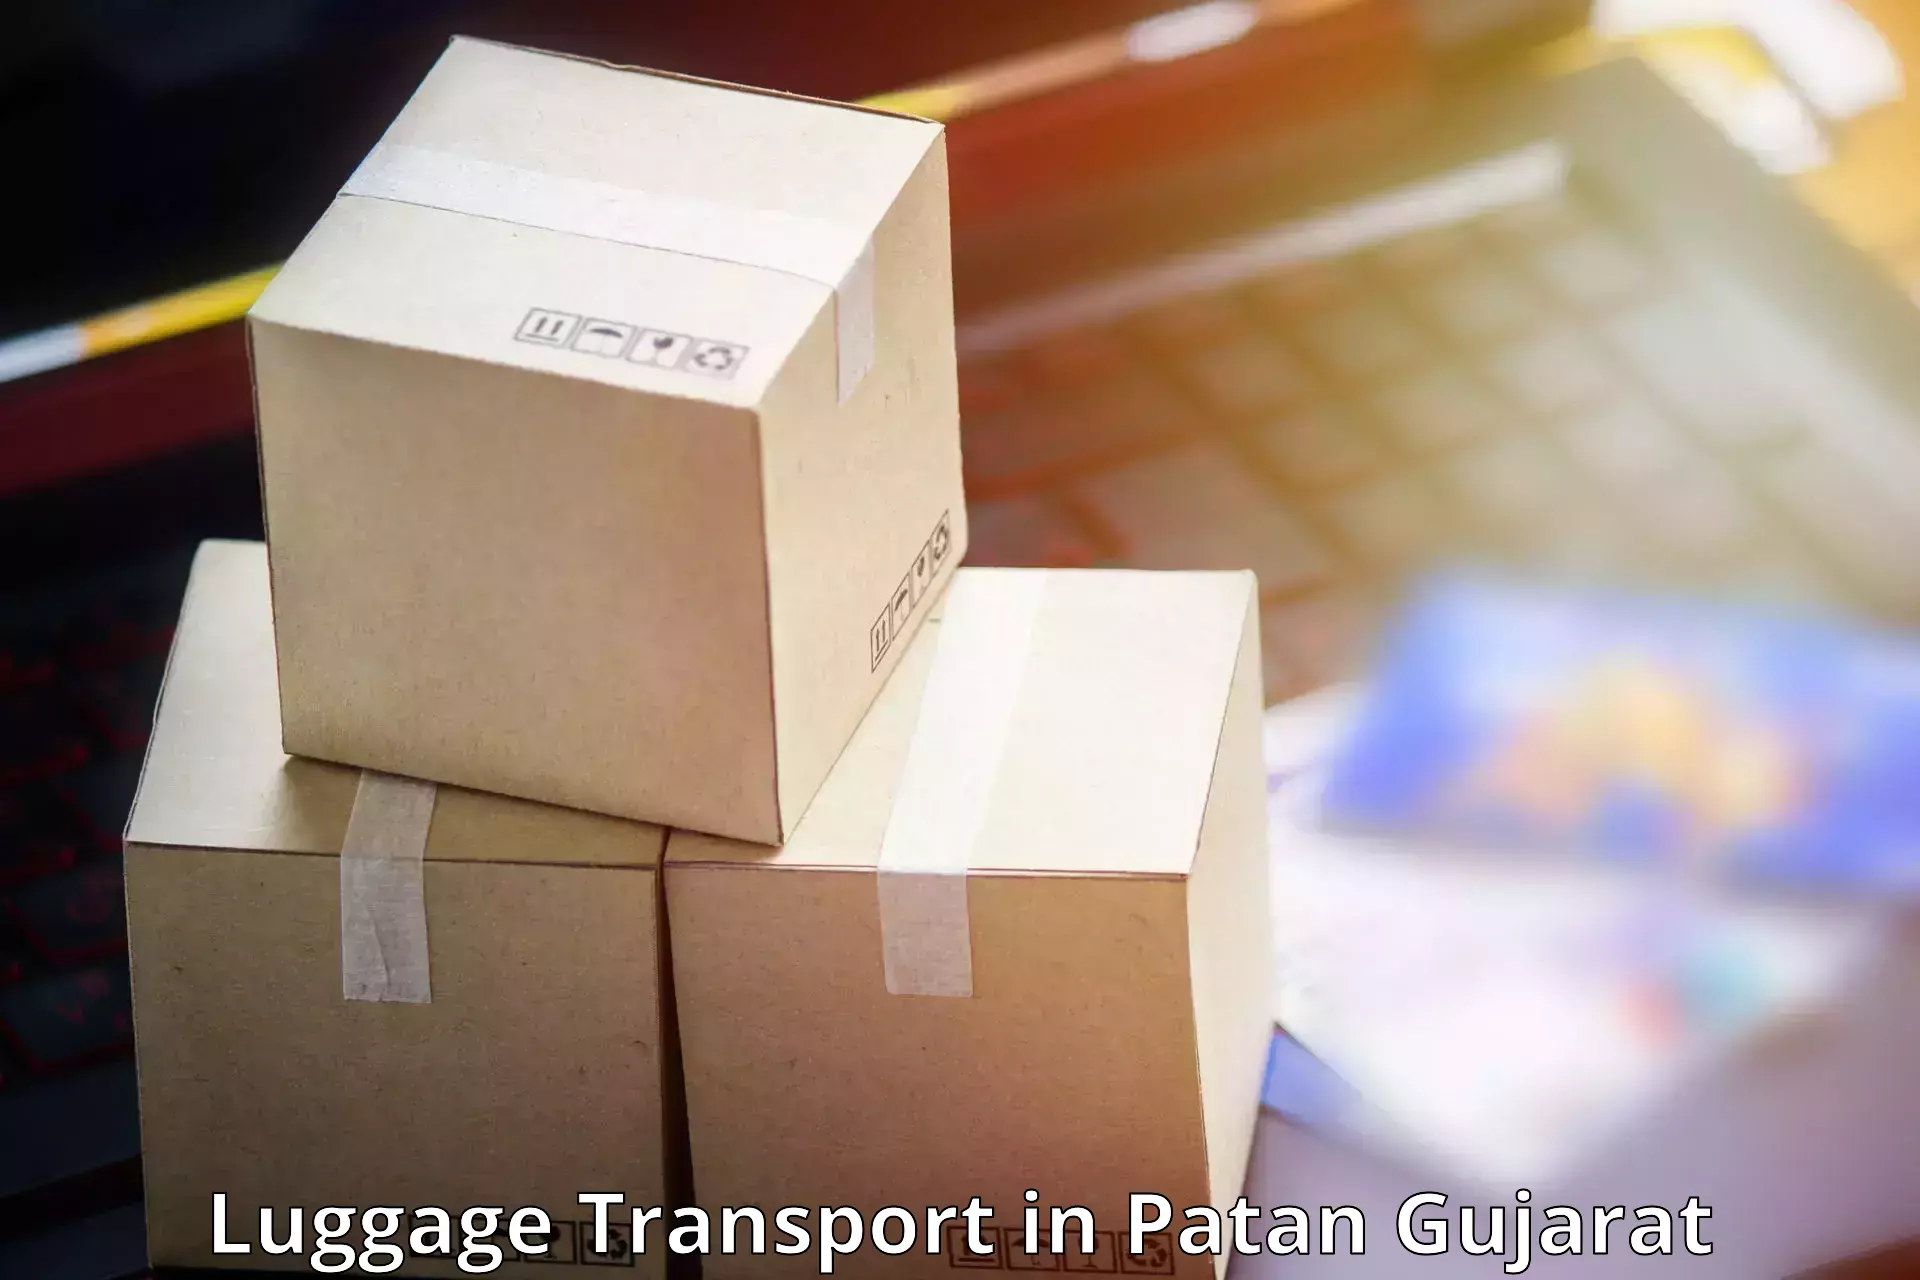 Luggage transport pricing in Patan Gujarat